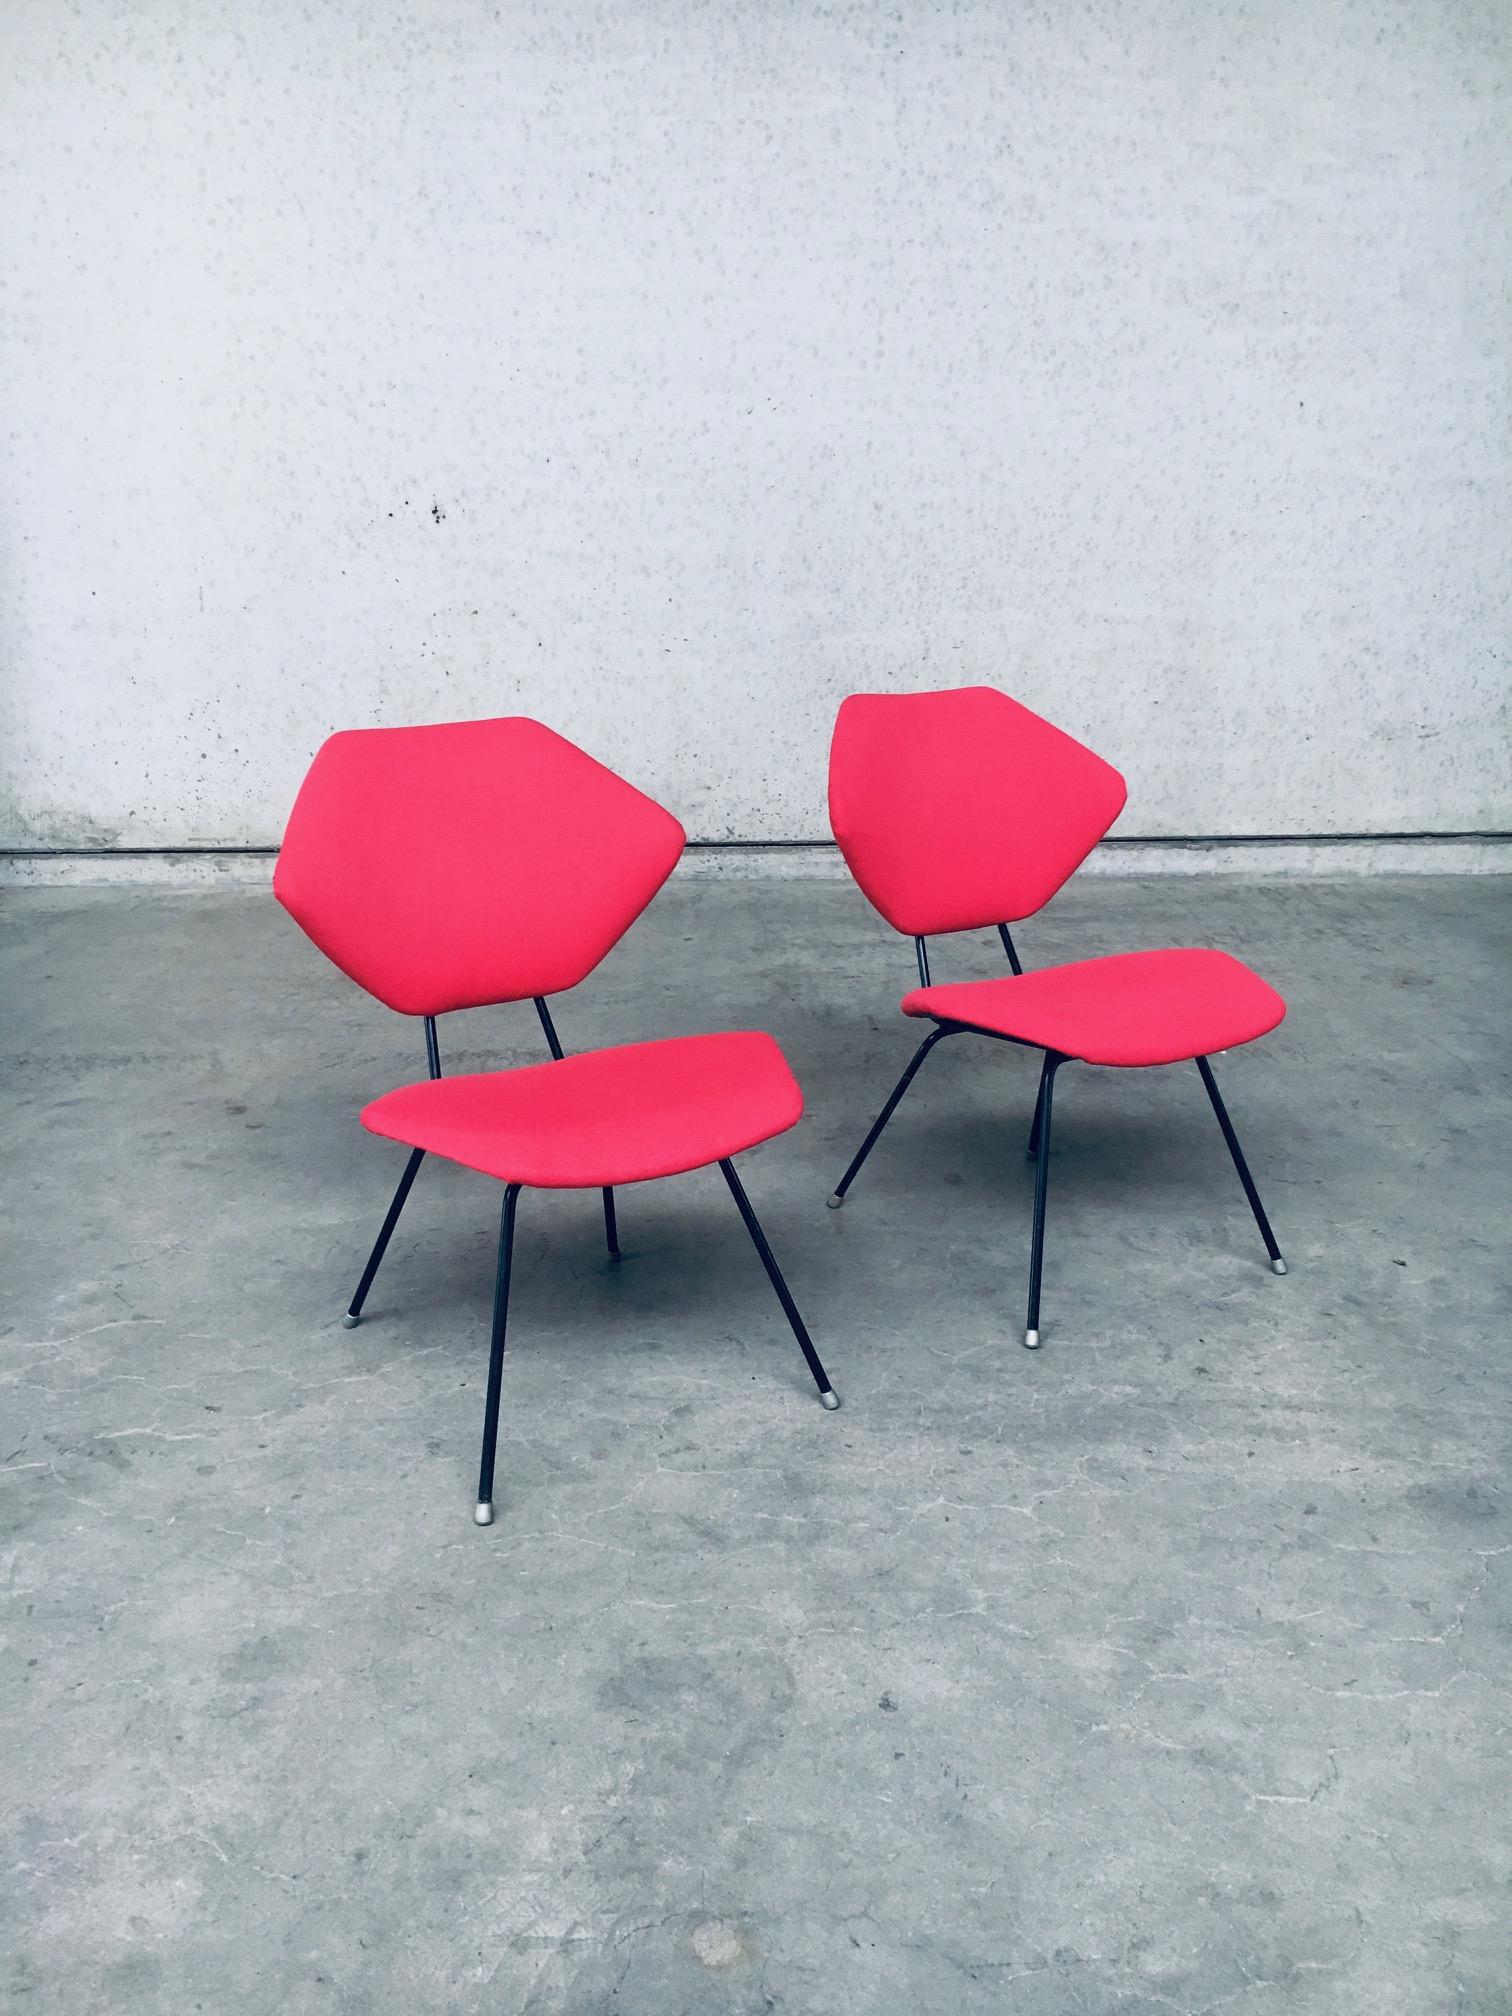 Vintage Midcentury Modern Design Low Chair set of 2 dans le style d'Augusto Bozzi. Fabriqué en Italie, années 1950. Structure en métal noir avec dossier et assise récemment retapissés en tissu rouge. De jolies chaises basses d'appoint qui peuvent